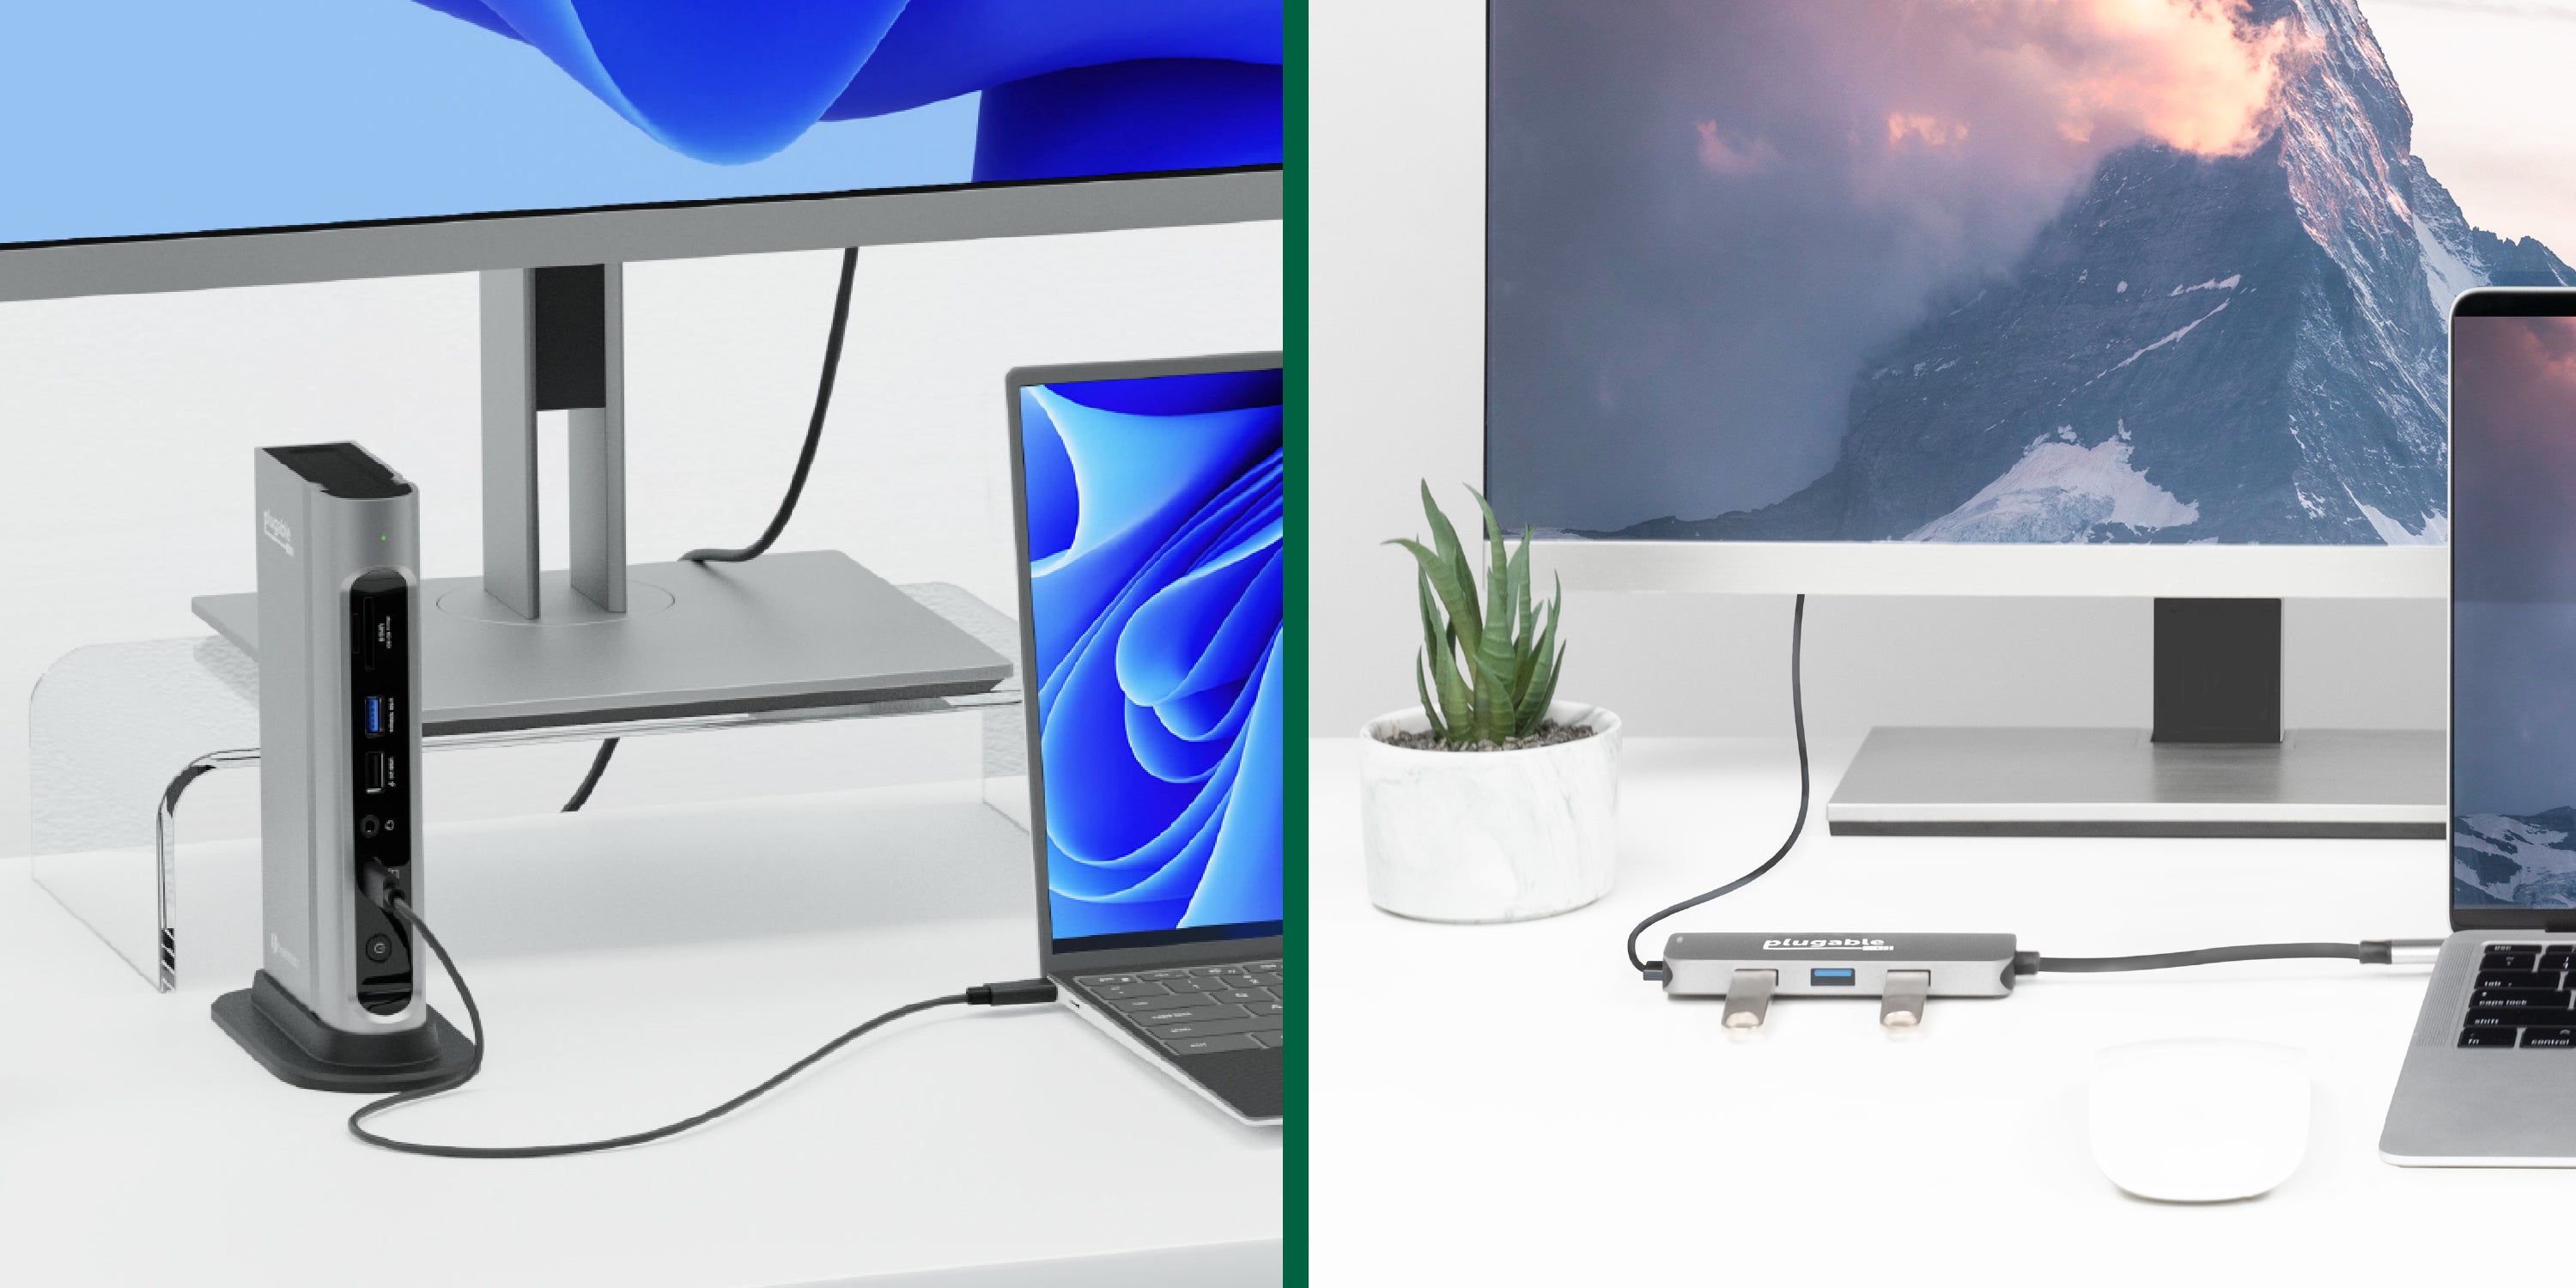 Anker's new USB-C dock lets M1 Mac users run three monitors